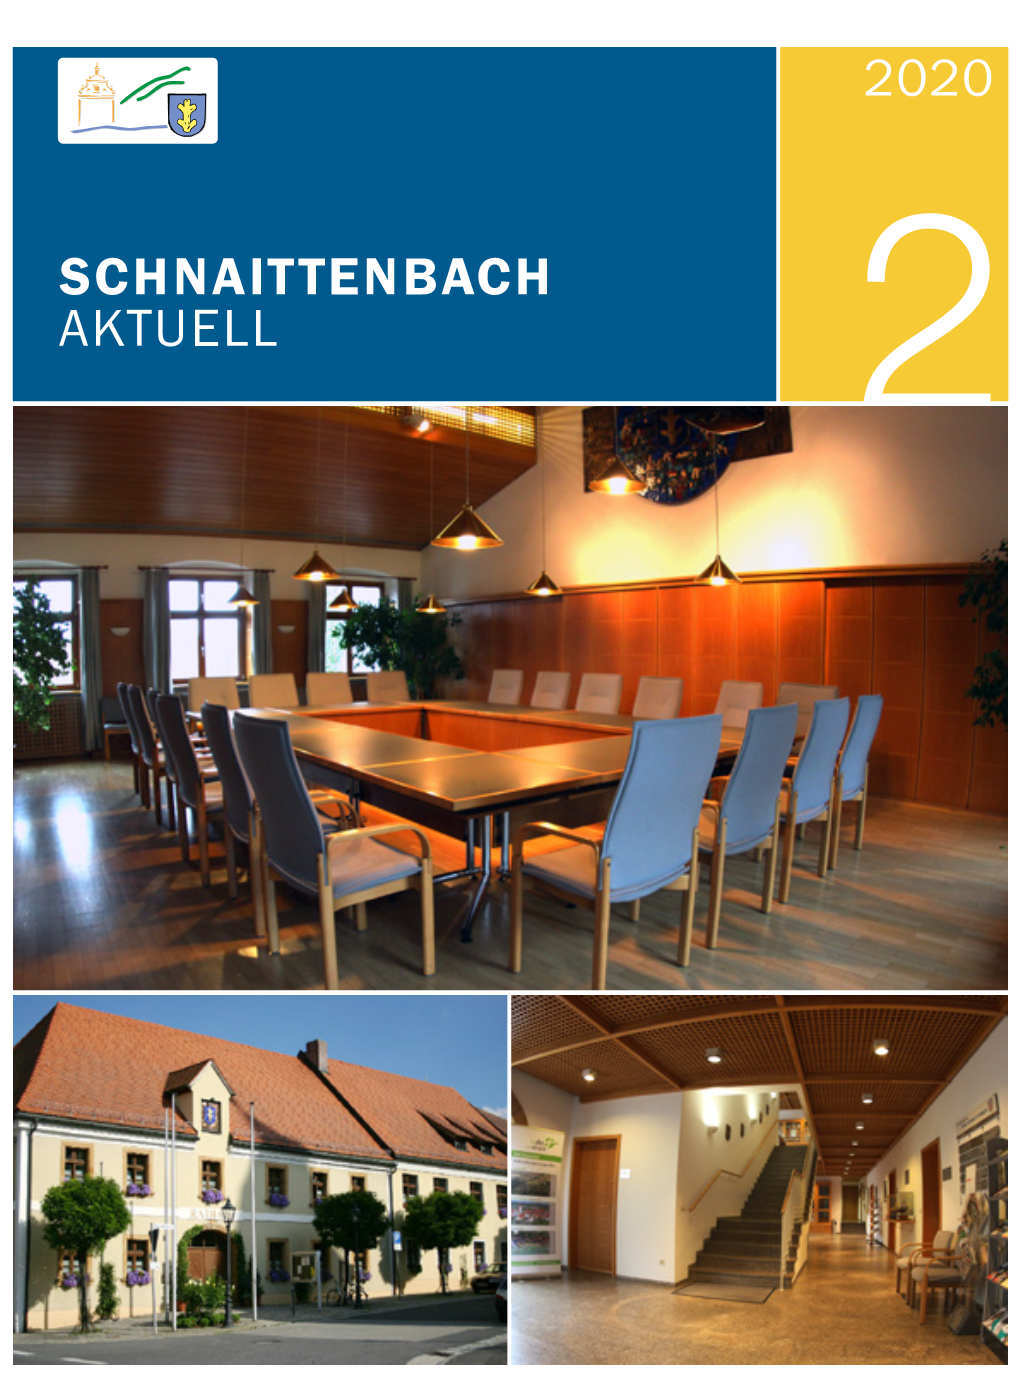 2020 Schnaittenbach Aktuell